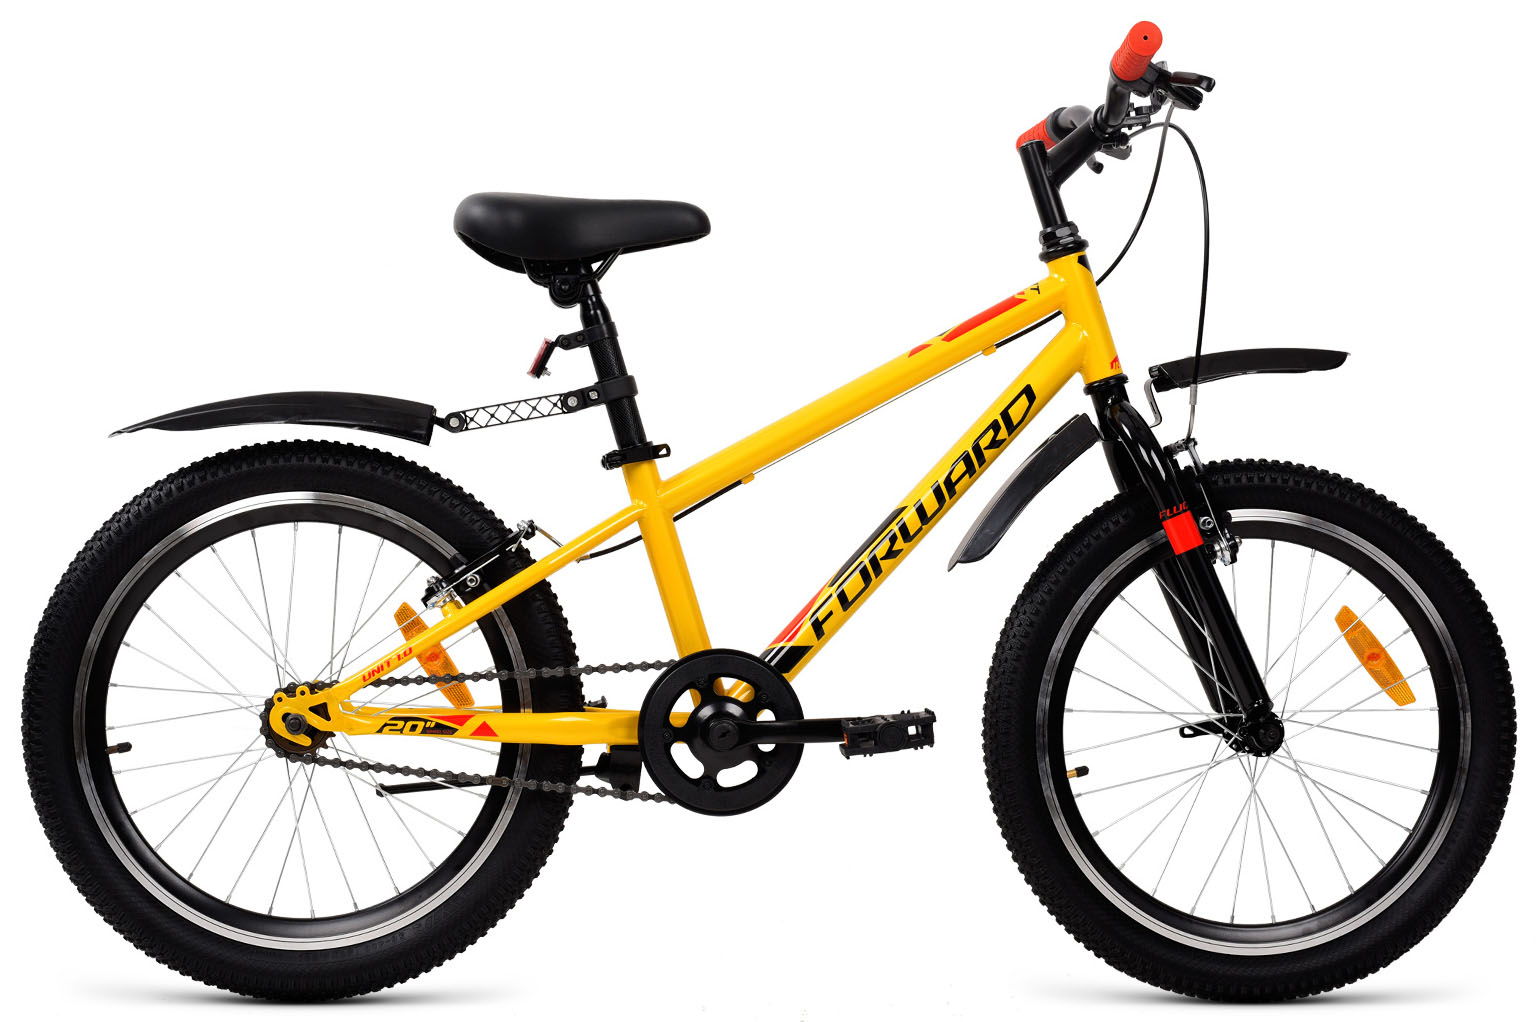  Отзывы о Детском велосипеде Forward Unit 20 1.0 2019